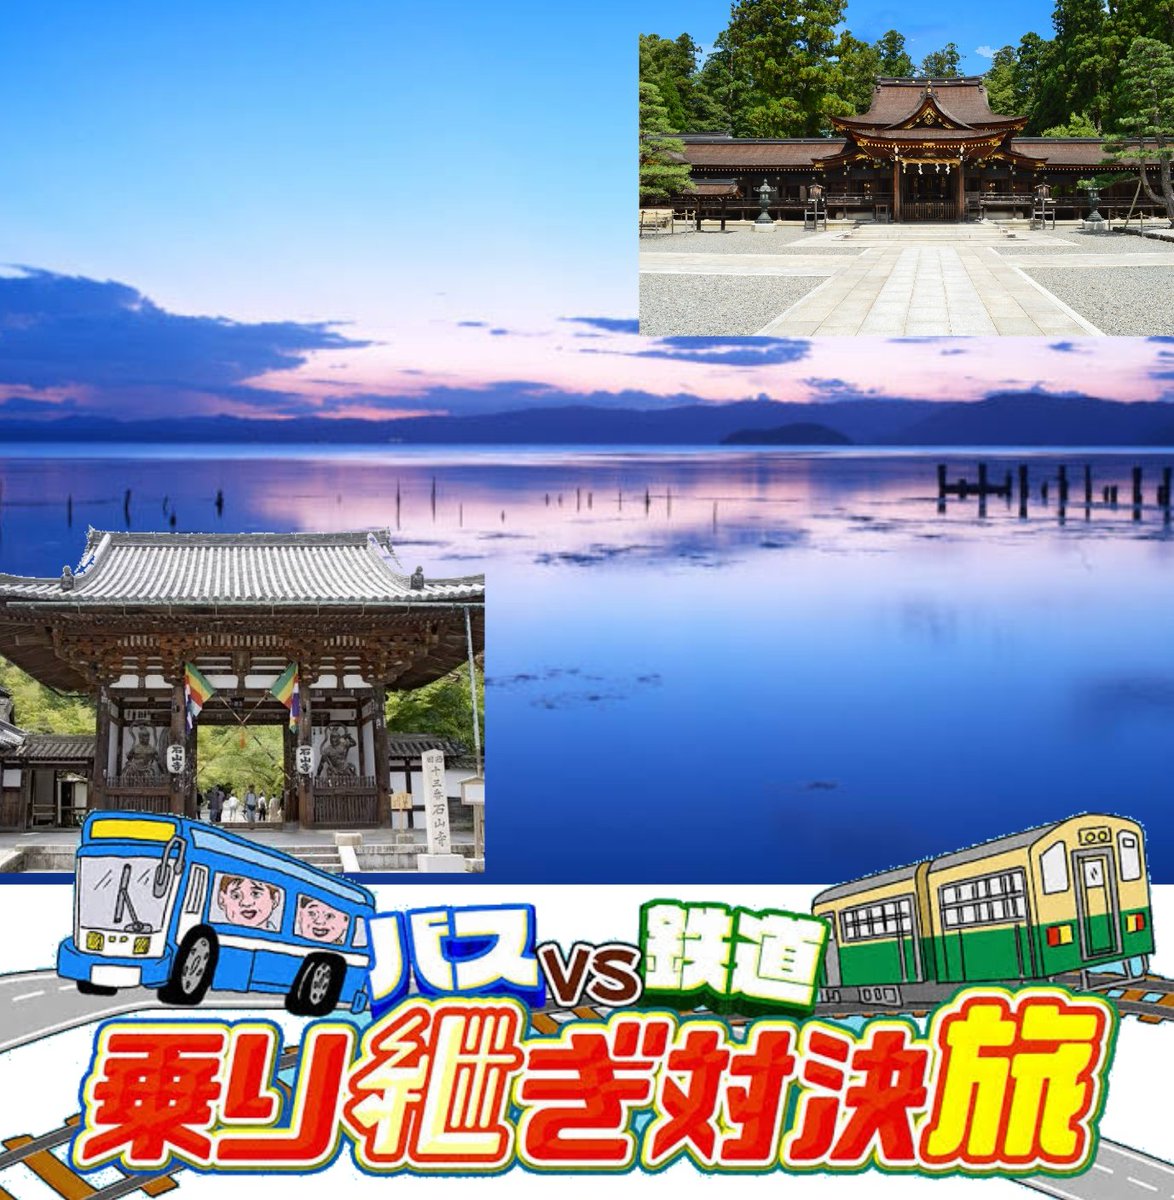 ローカル路線バスVS鉄道　乗り継ぎ対決旅

夏の琵琶湖横断!　石山寺〜多賀大社

関東でばかりやってるから関西でもやりませんか?